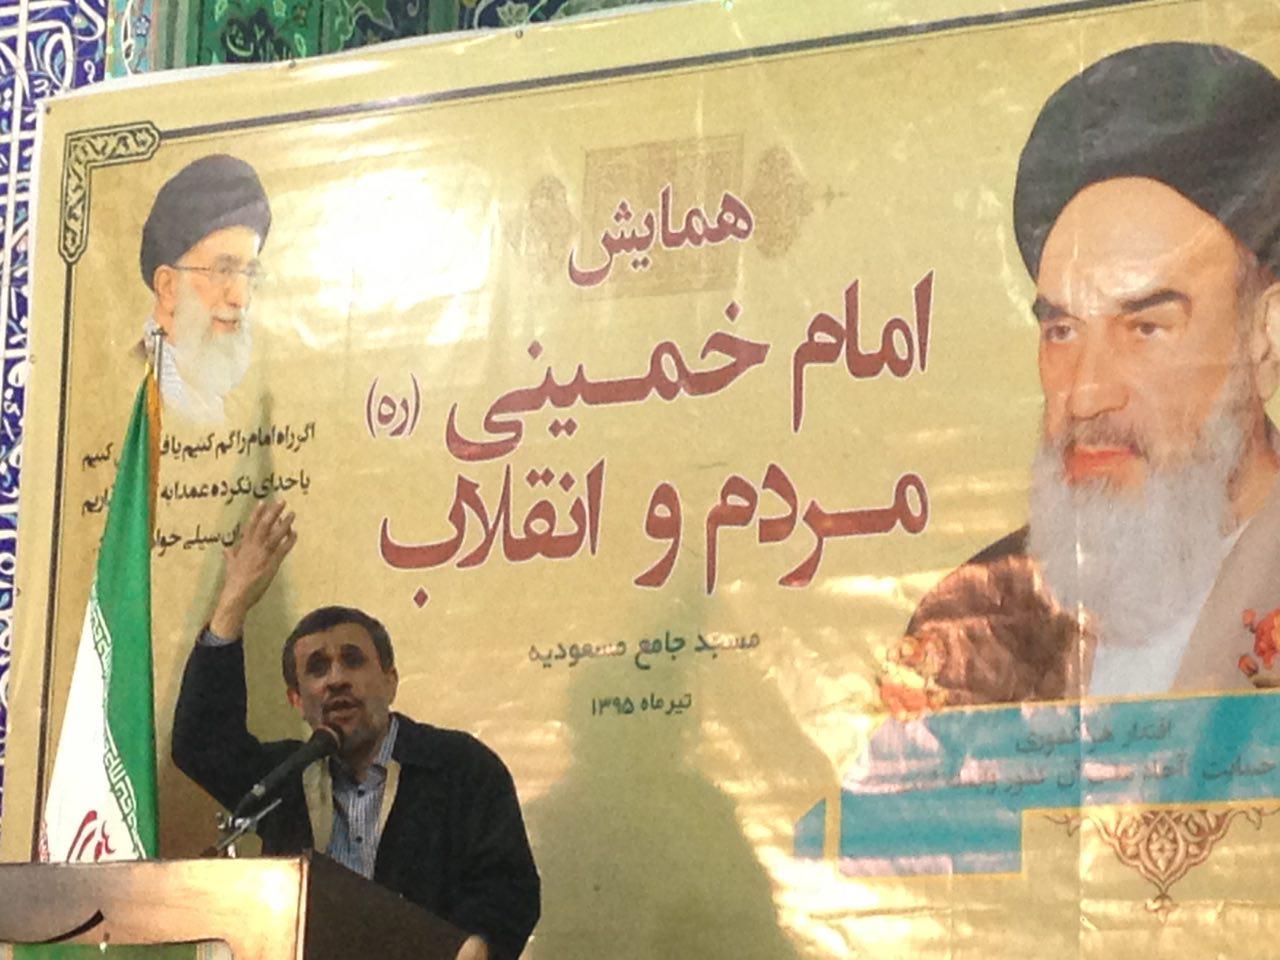 نیش های احمدی نژاد به دولت با چاشنی بیت المال!/ همان حرف های همیشگی...